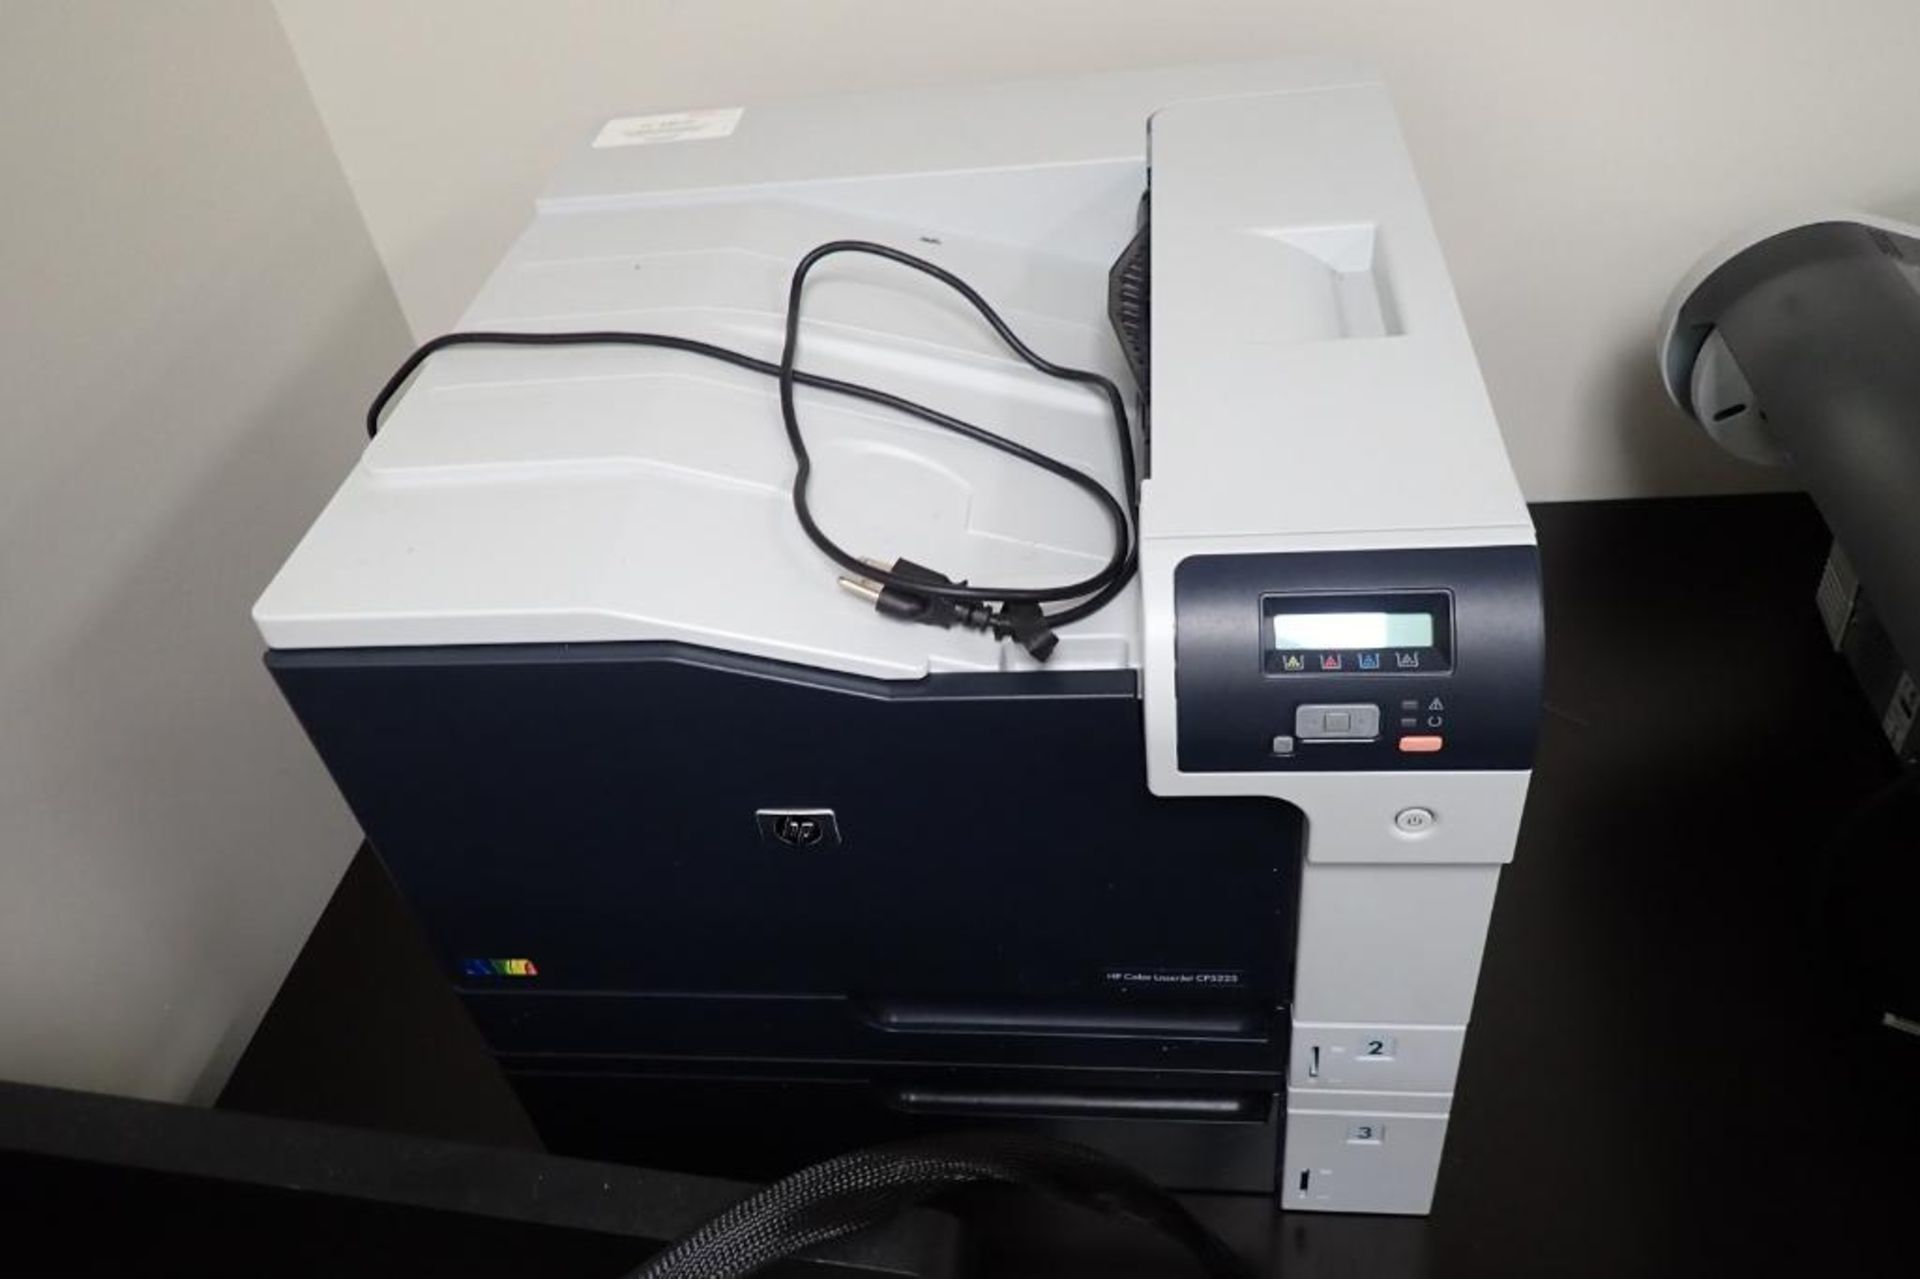 HP color laser jet printer, Model CP5225 - Image 2 of 7